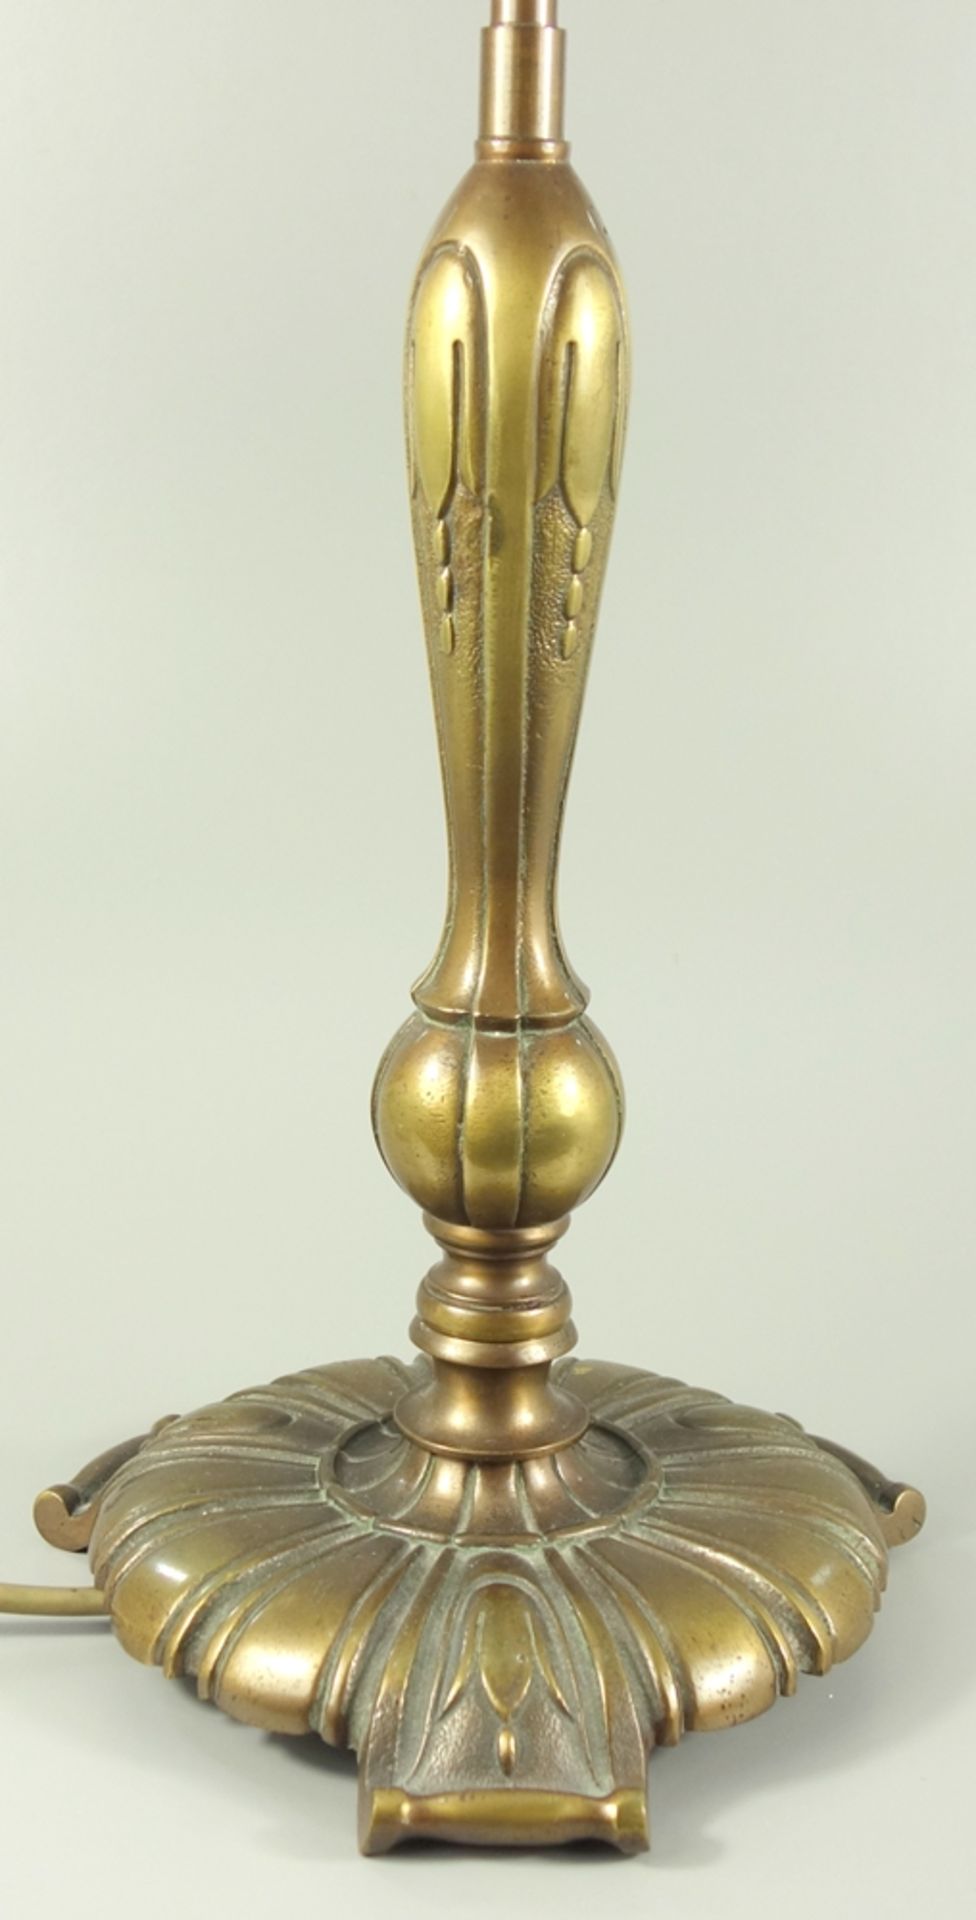 Messingtischlampe, zweiflammig, 1930er Jahre, Bronzeguss mit stilisierten Blüten, H.64,5cm, - Bild 2 aus 3